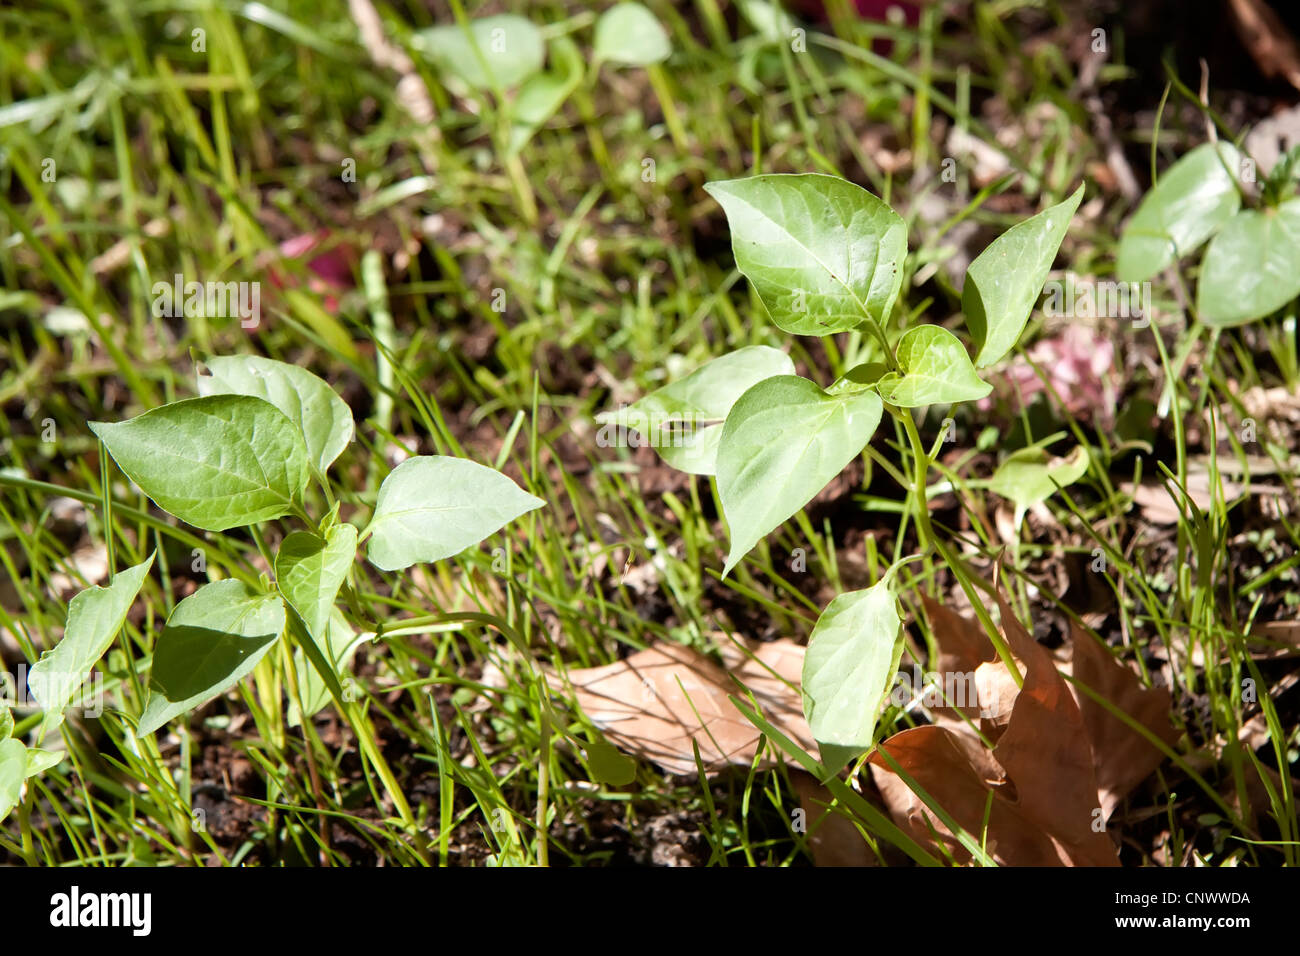 Kleine Peperoni-Pflanzen im Garten Stockfotografie - Alamy